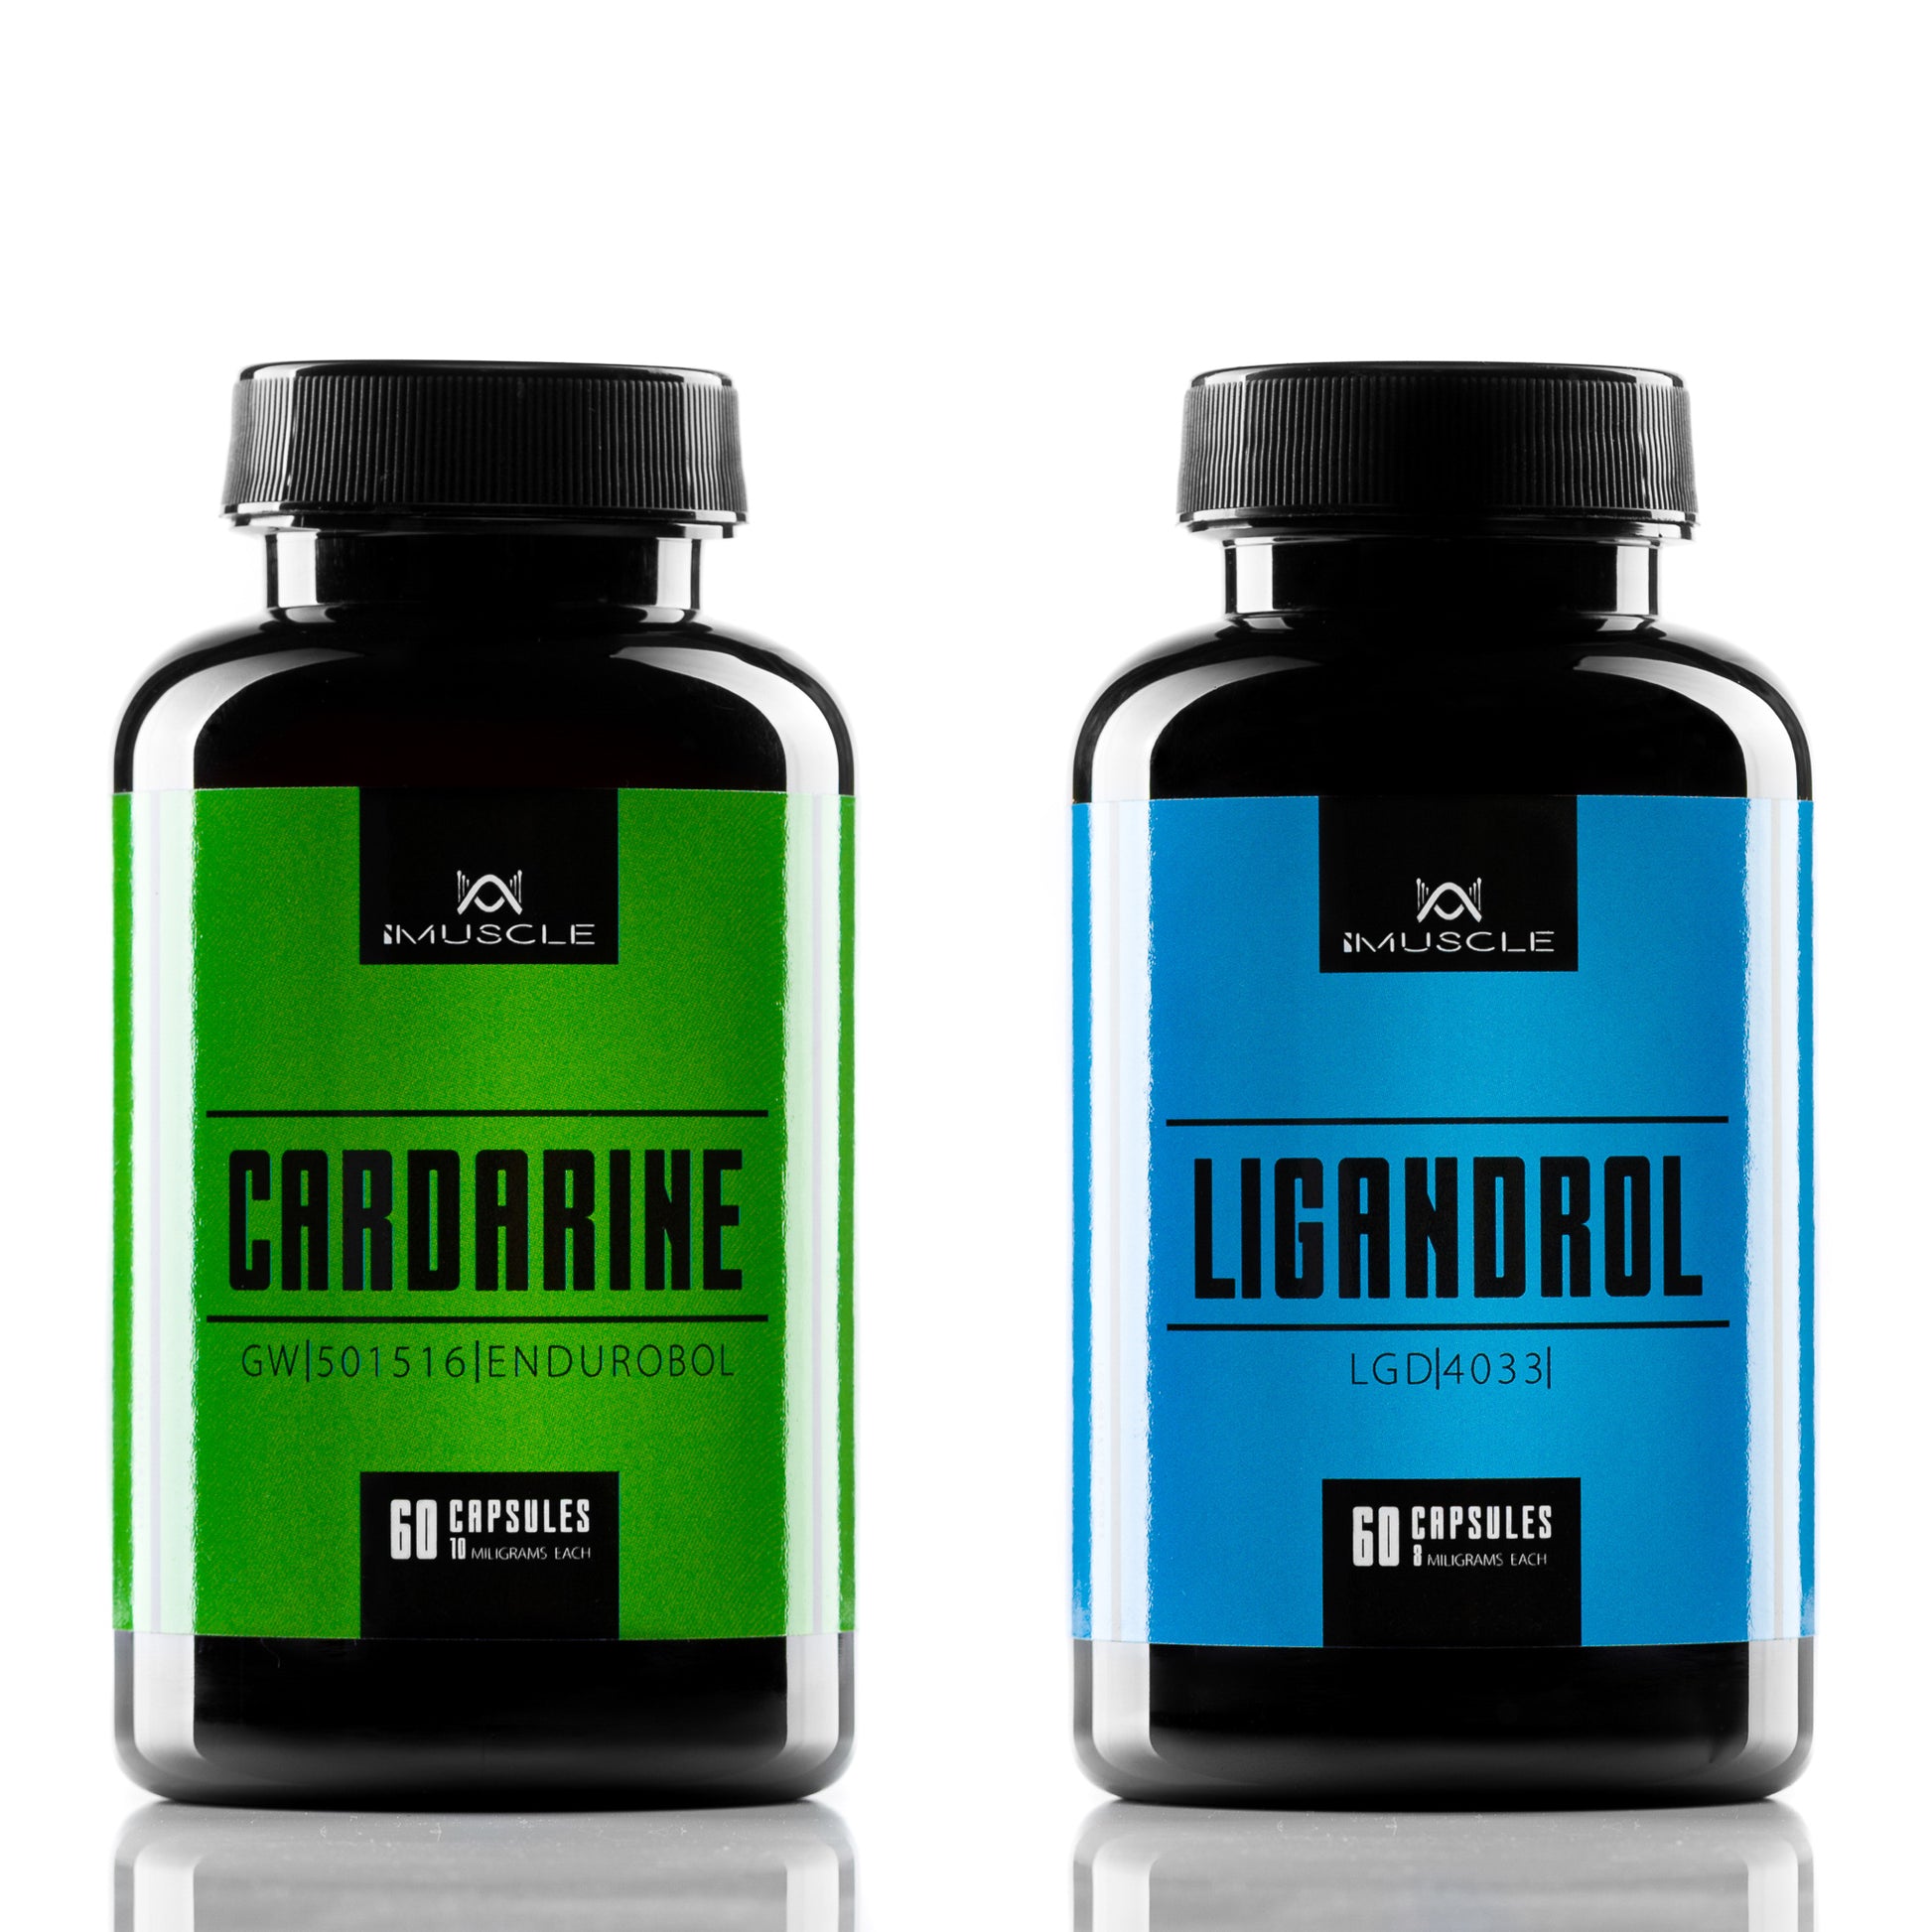 Cardarine GW501516 Ligandrol LGD4033